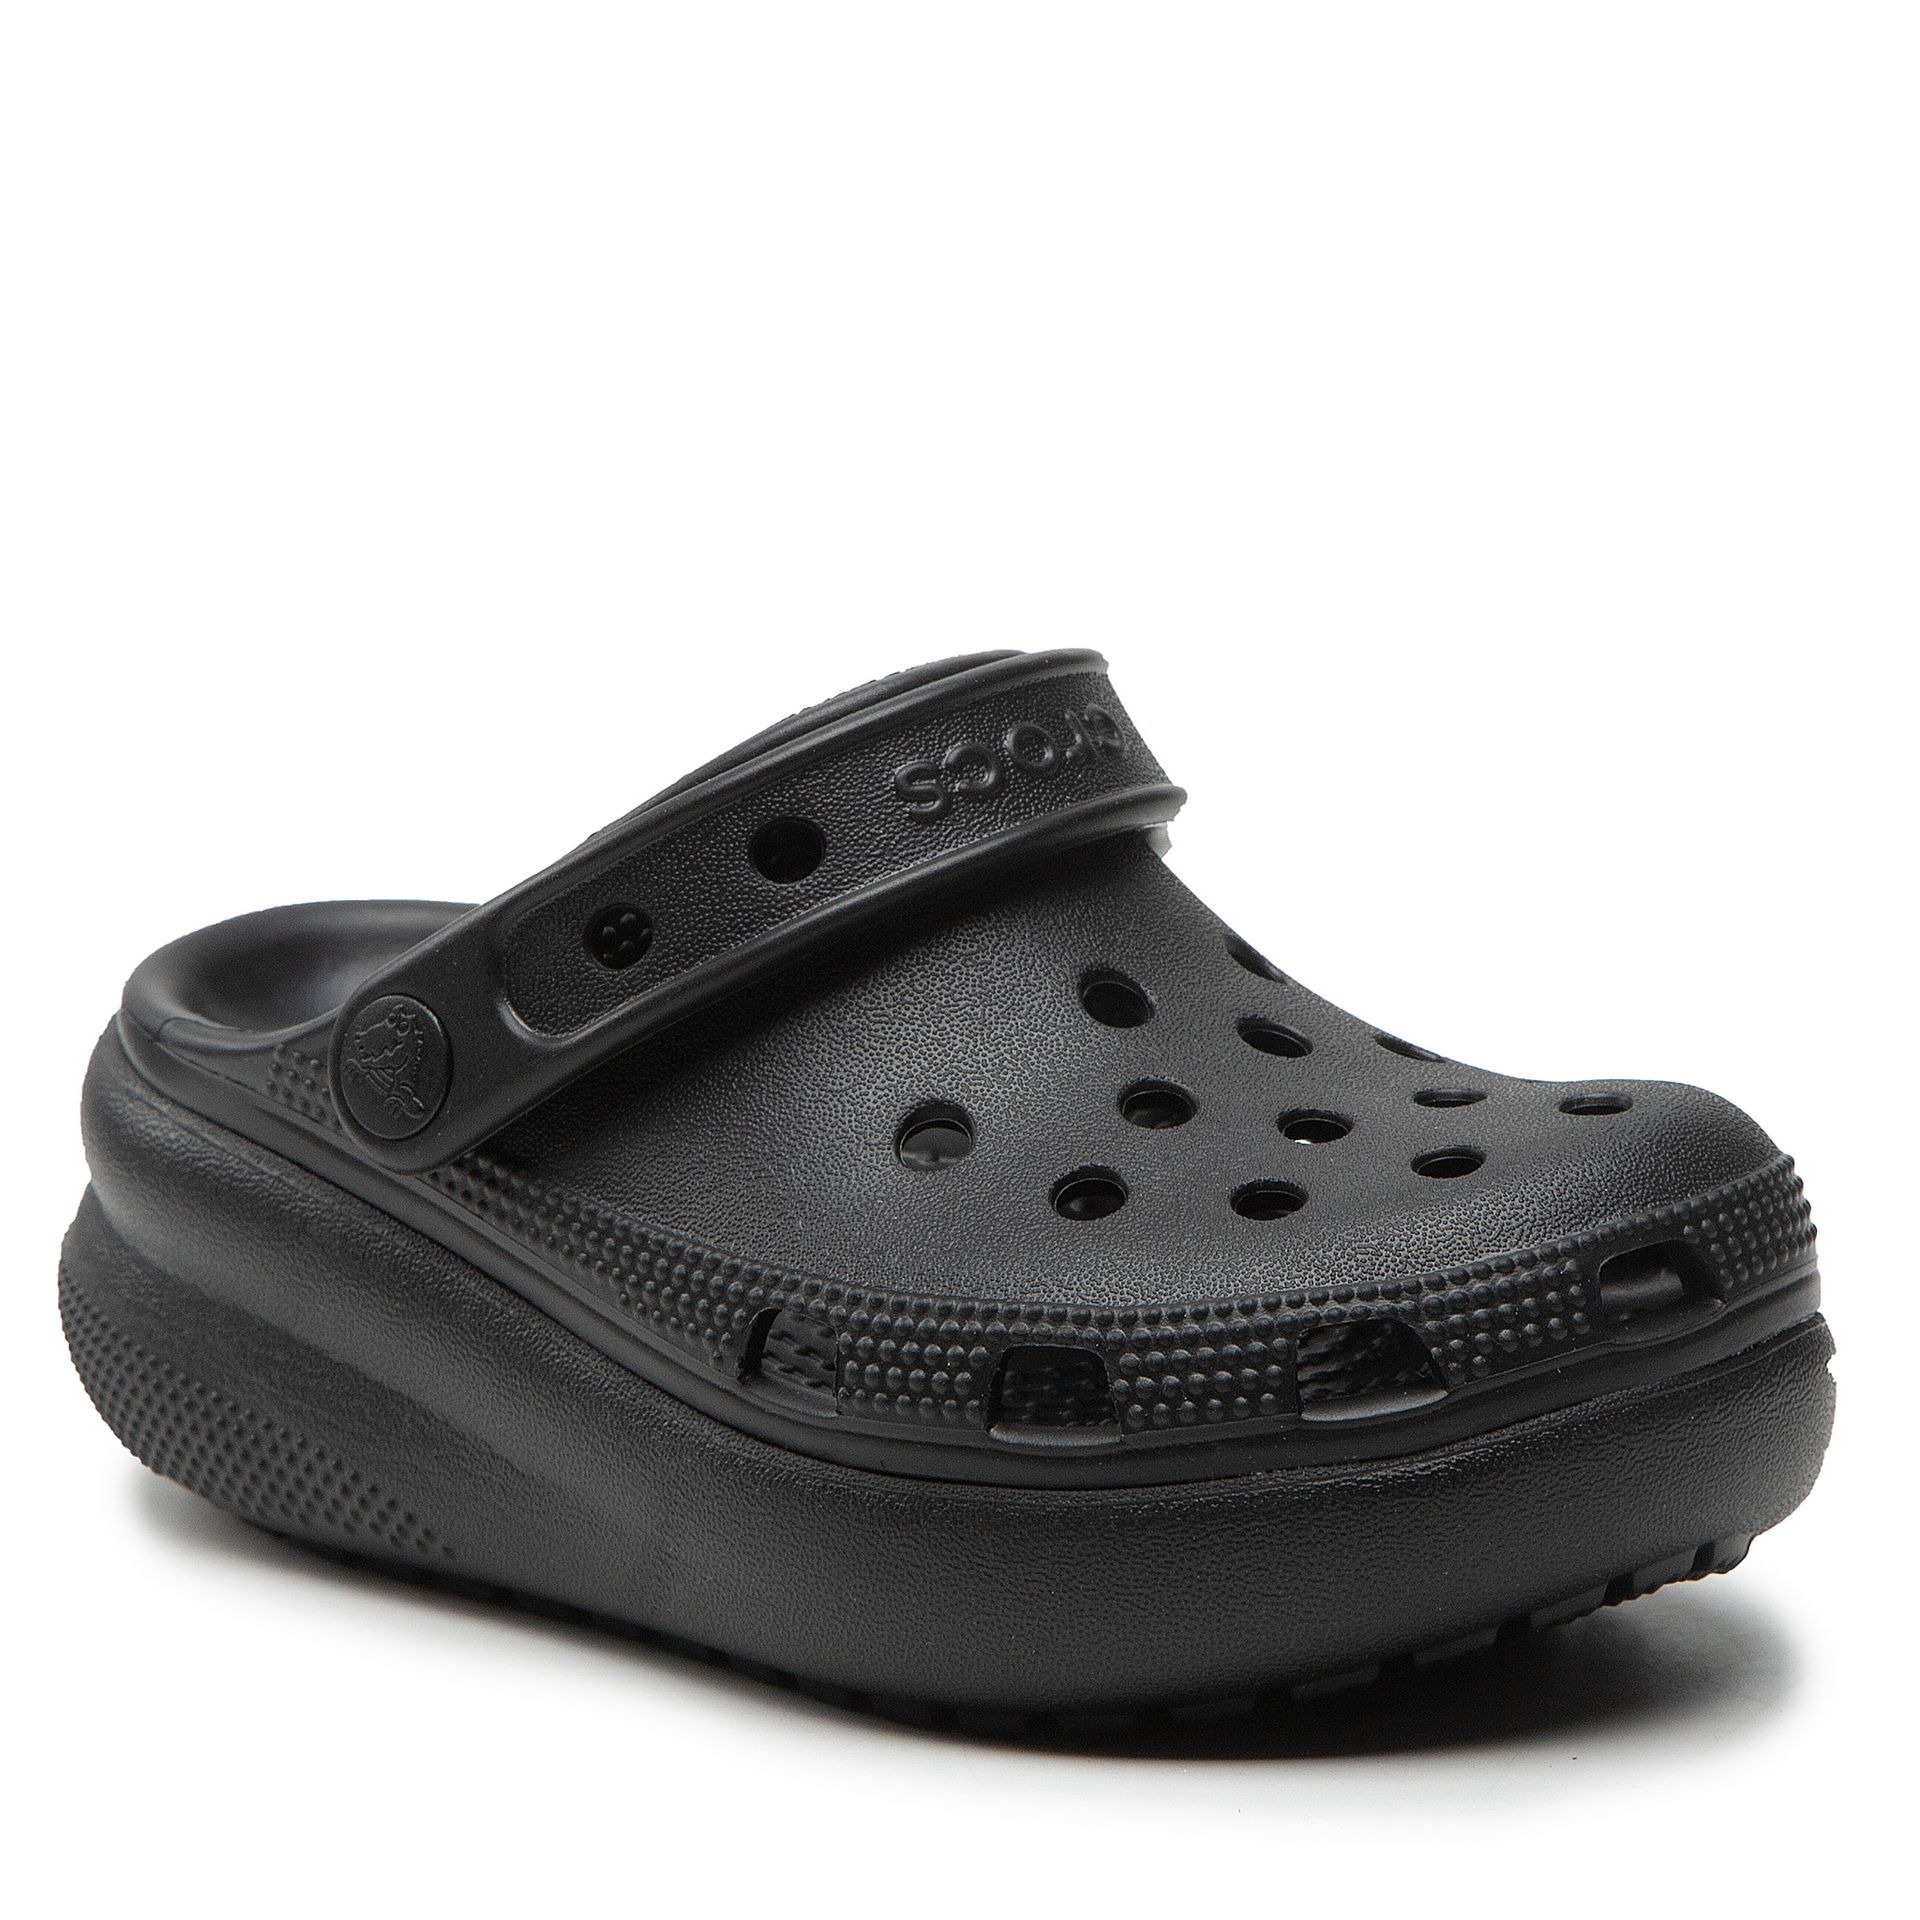 Klapki CROCS - Classic Crocs Cutie Clog 207708 Black